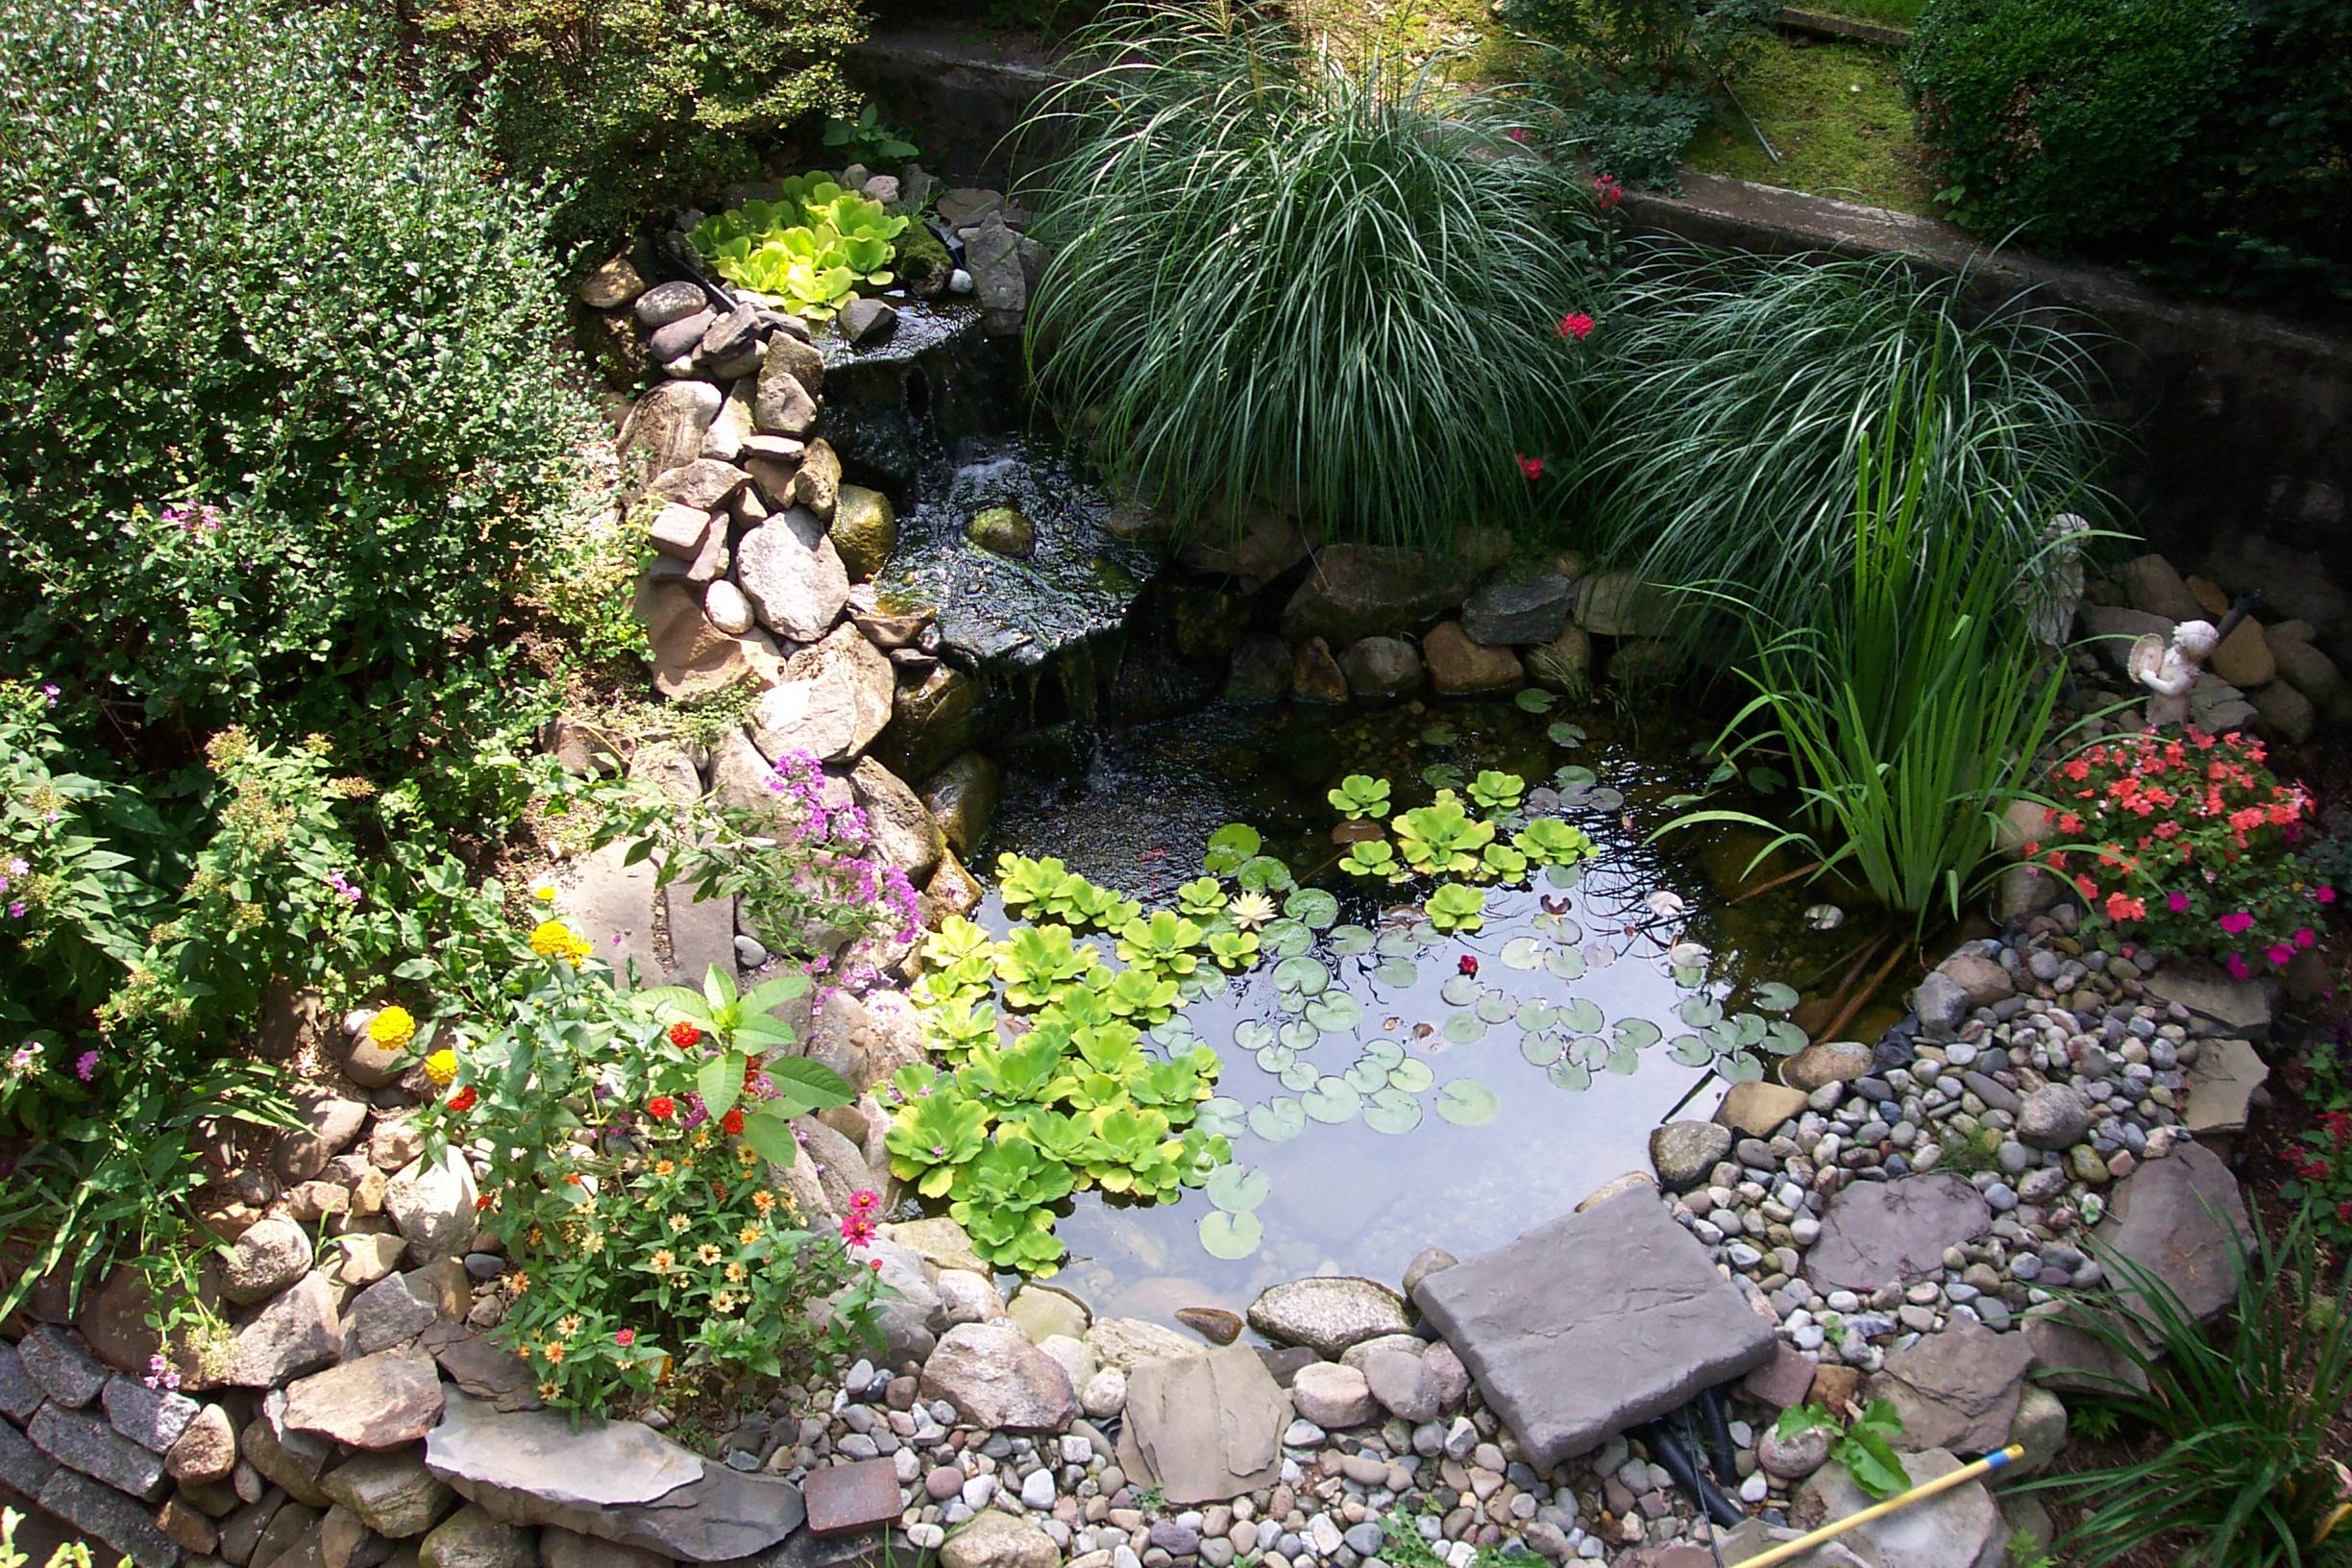 Your Garden Pond